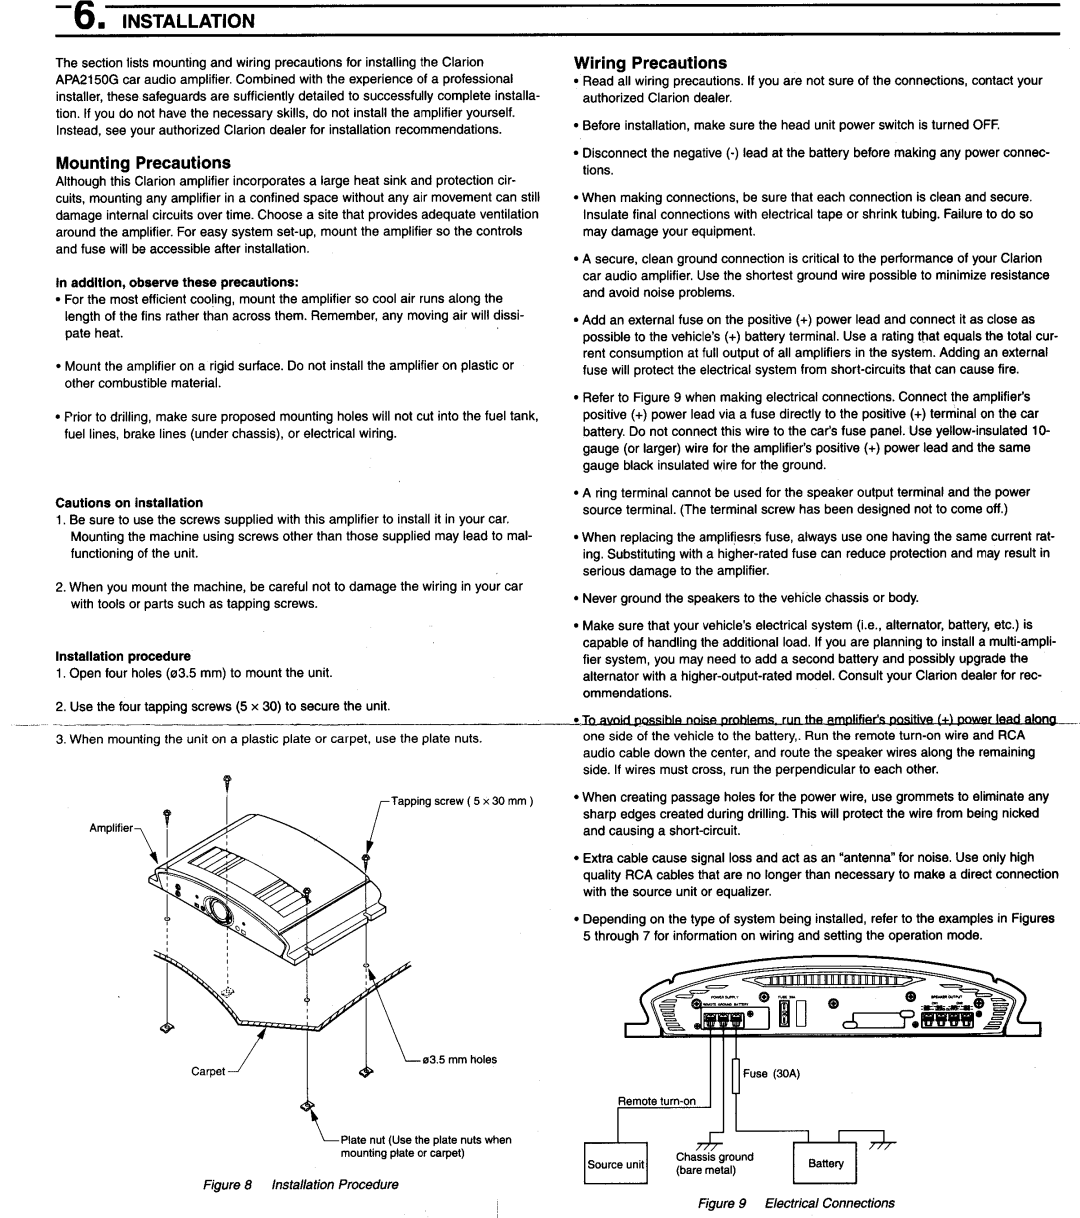 Clarion APA2150G manual 